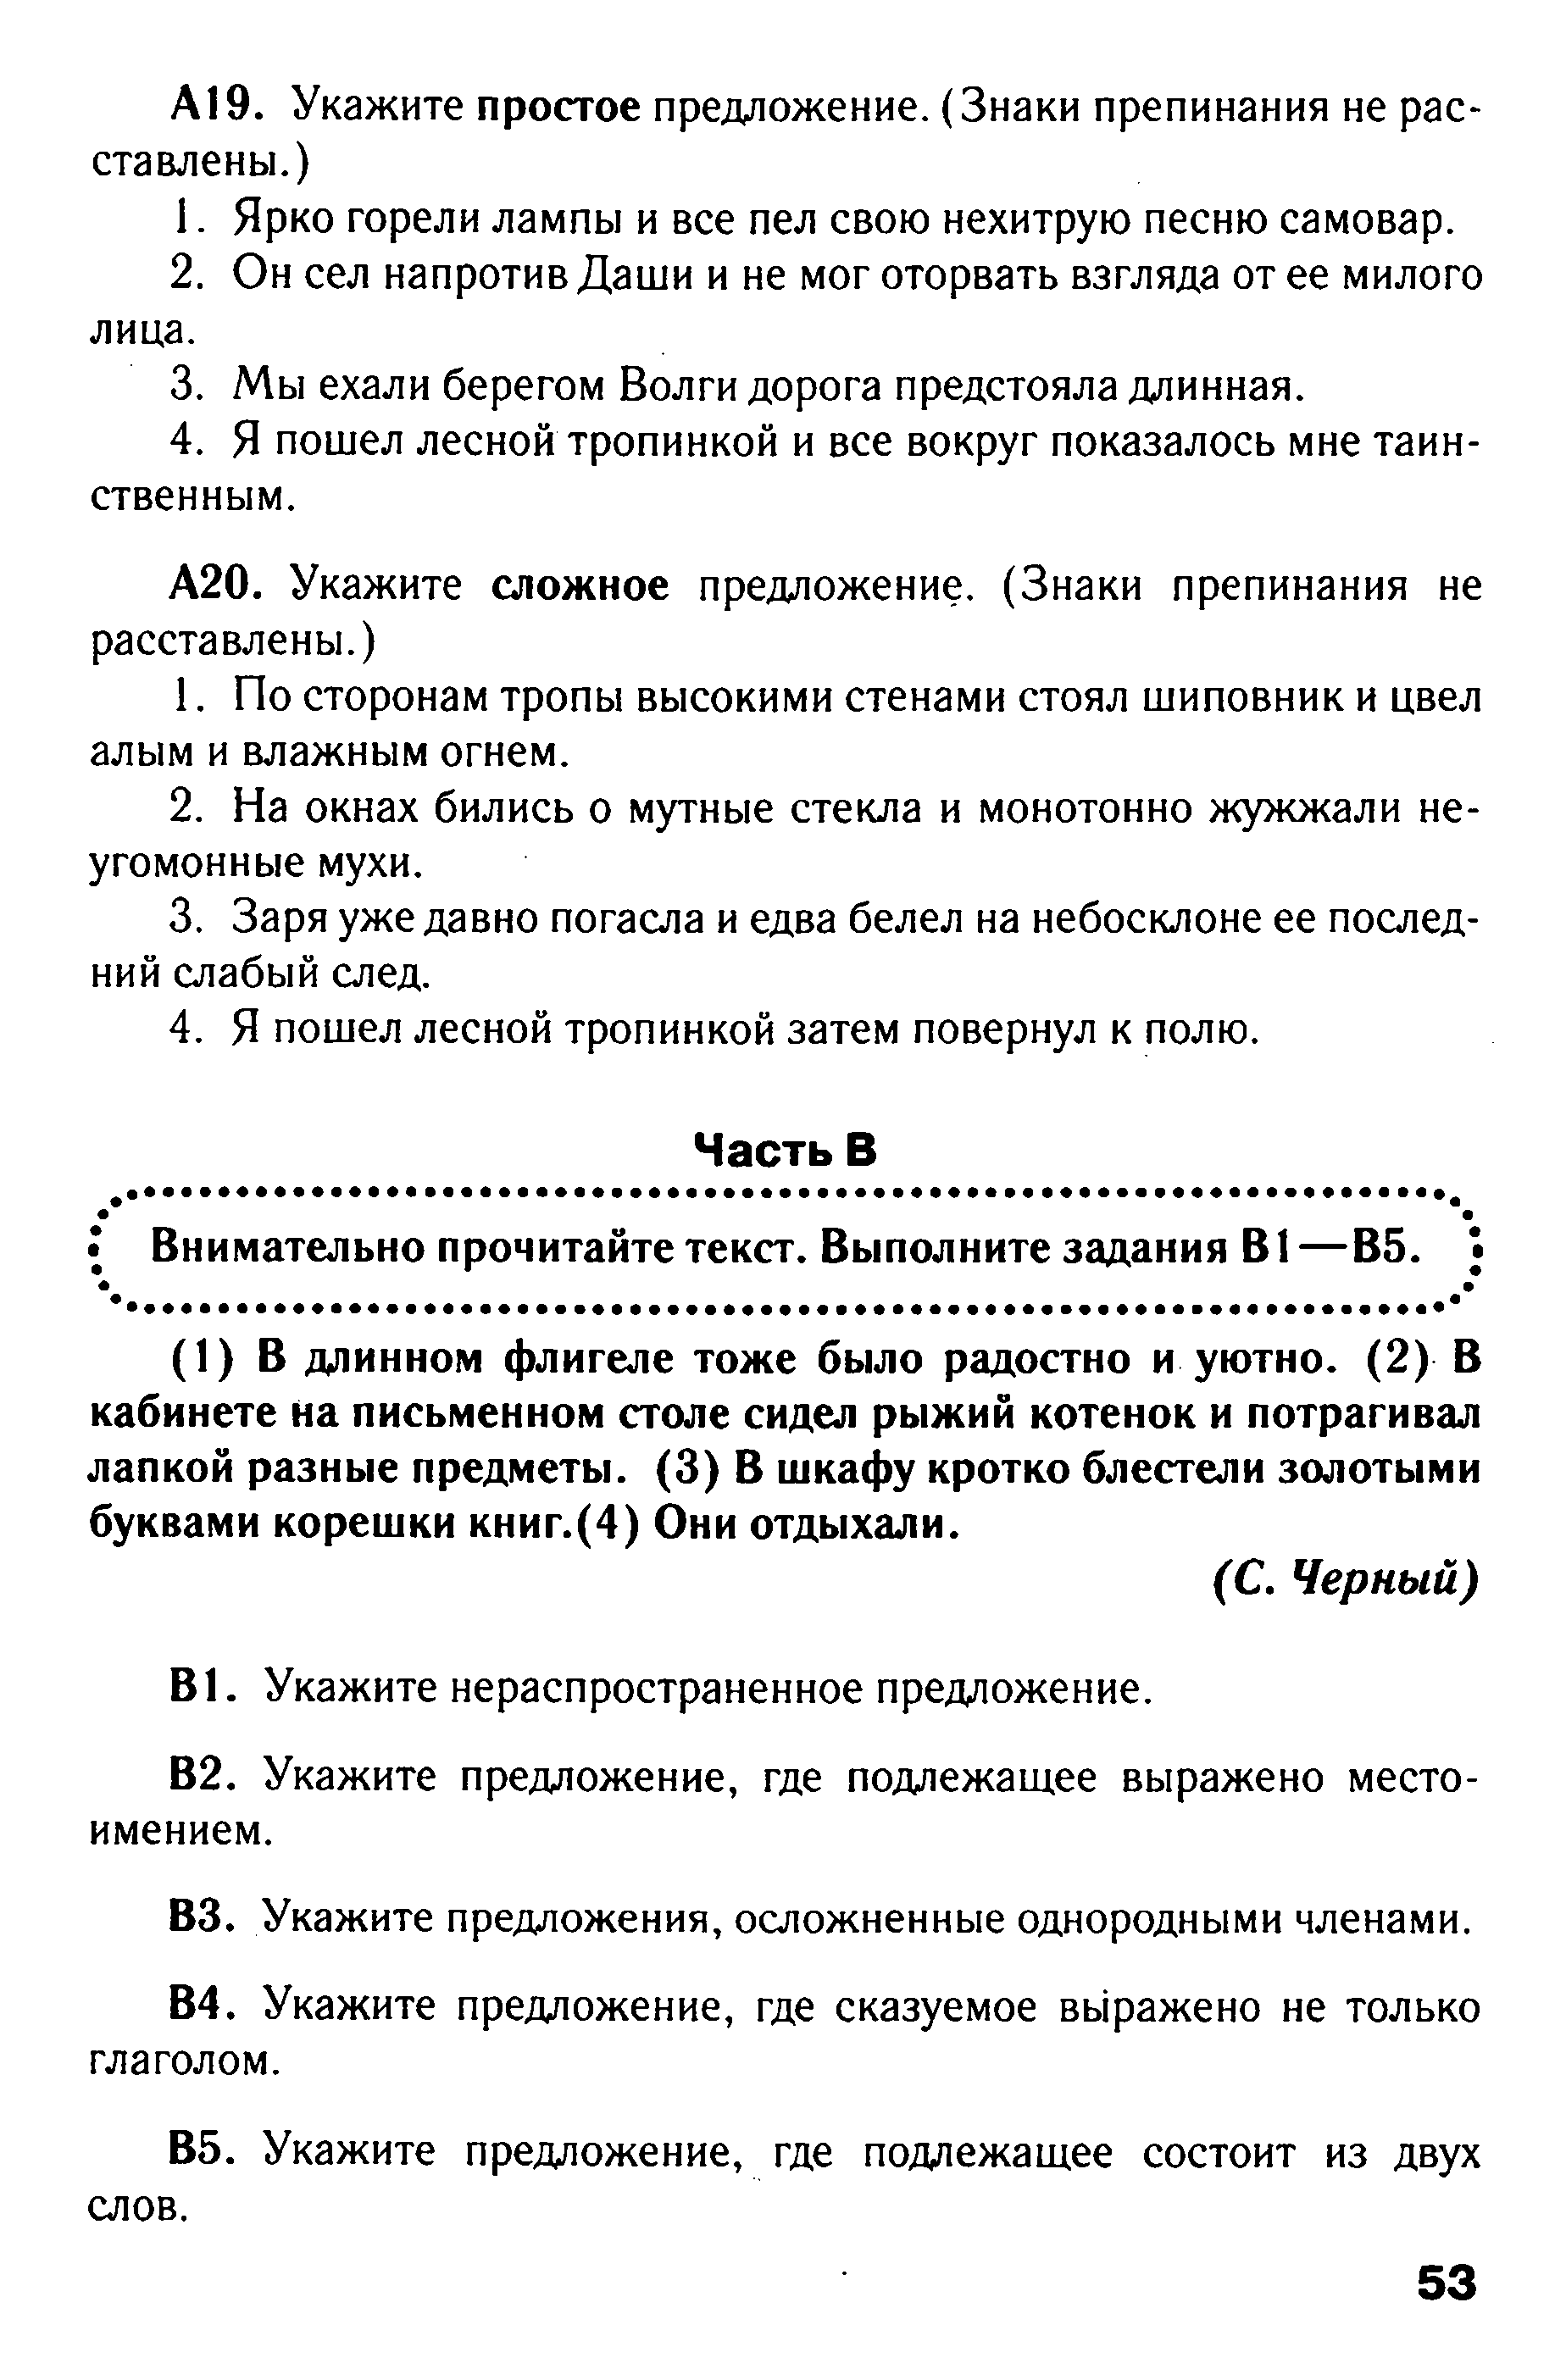 Тест по русскому языку в формате ГИА на тему: Синтаксис вариант 2 (5 класс)